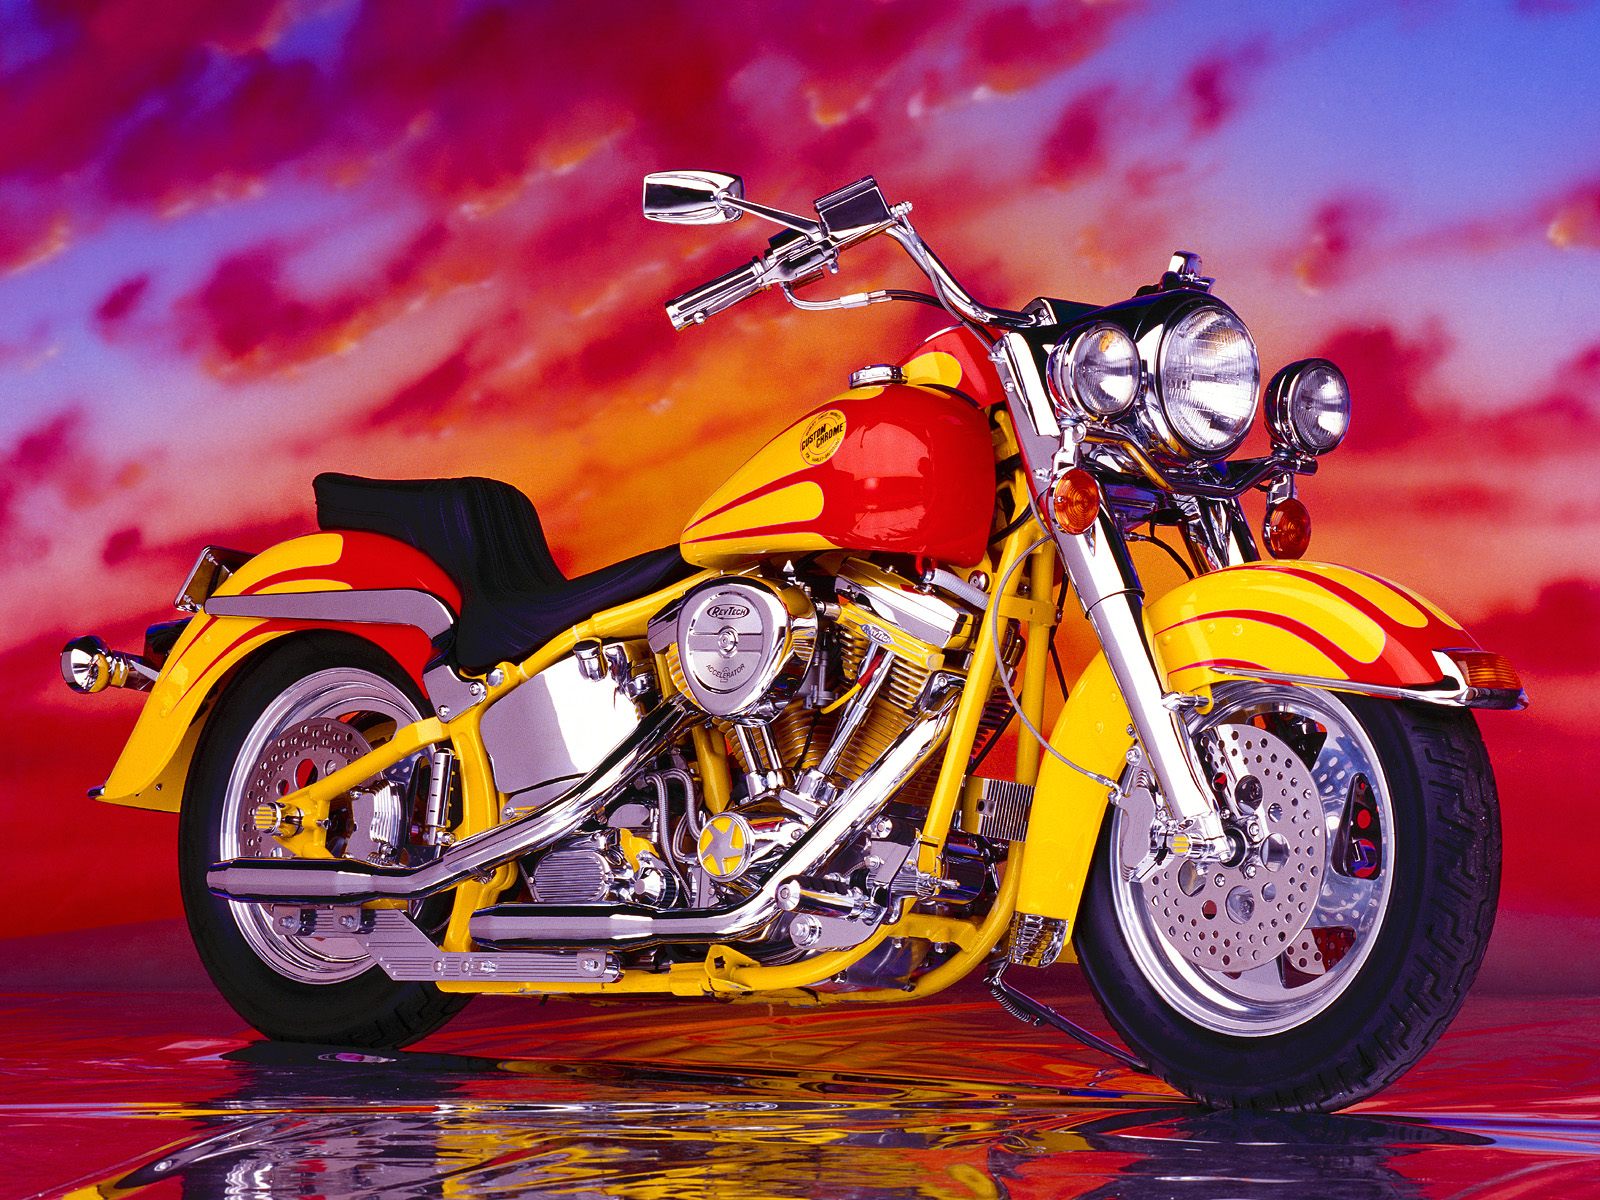 Free Desktop wallpaper downloads Motorcycles Kawasaki Harley Davidson